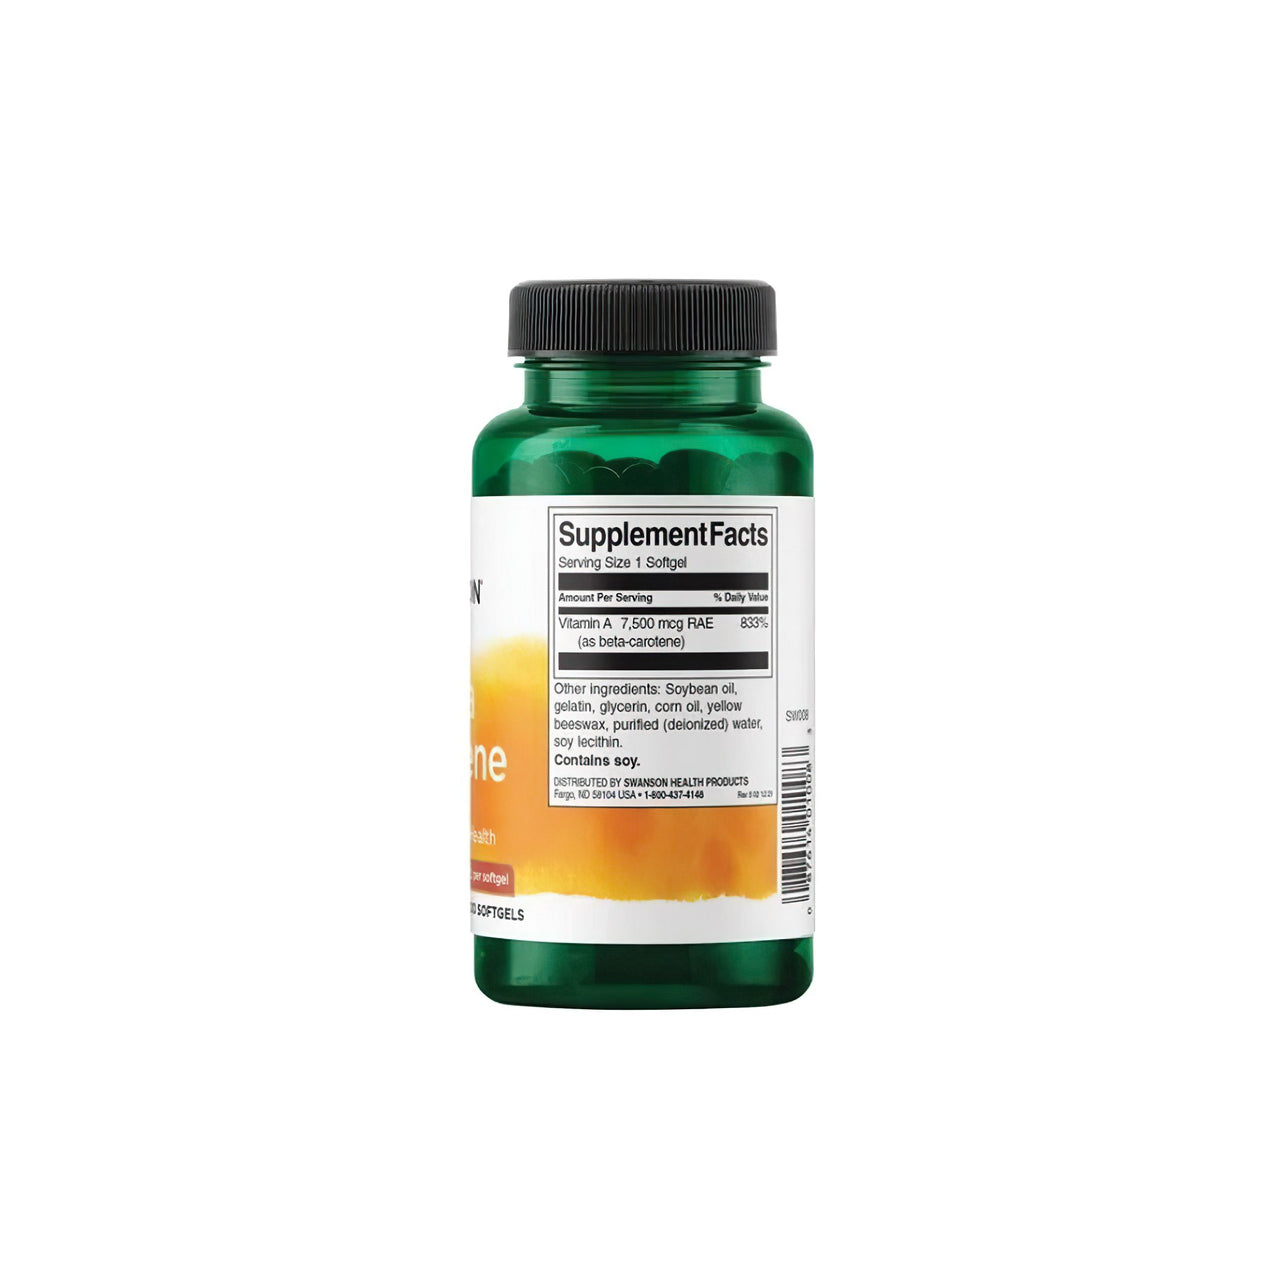 Um frasco de suplemento alimentar de Swanson Beta-Carotene - 25000 IU 300 softgels Vitamin A sobre um fundo branco.